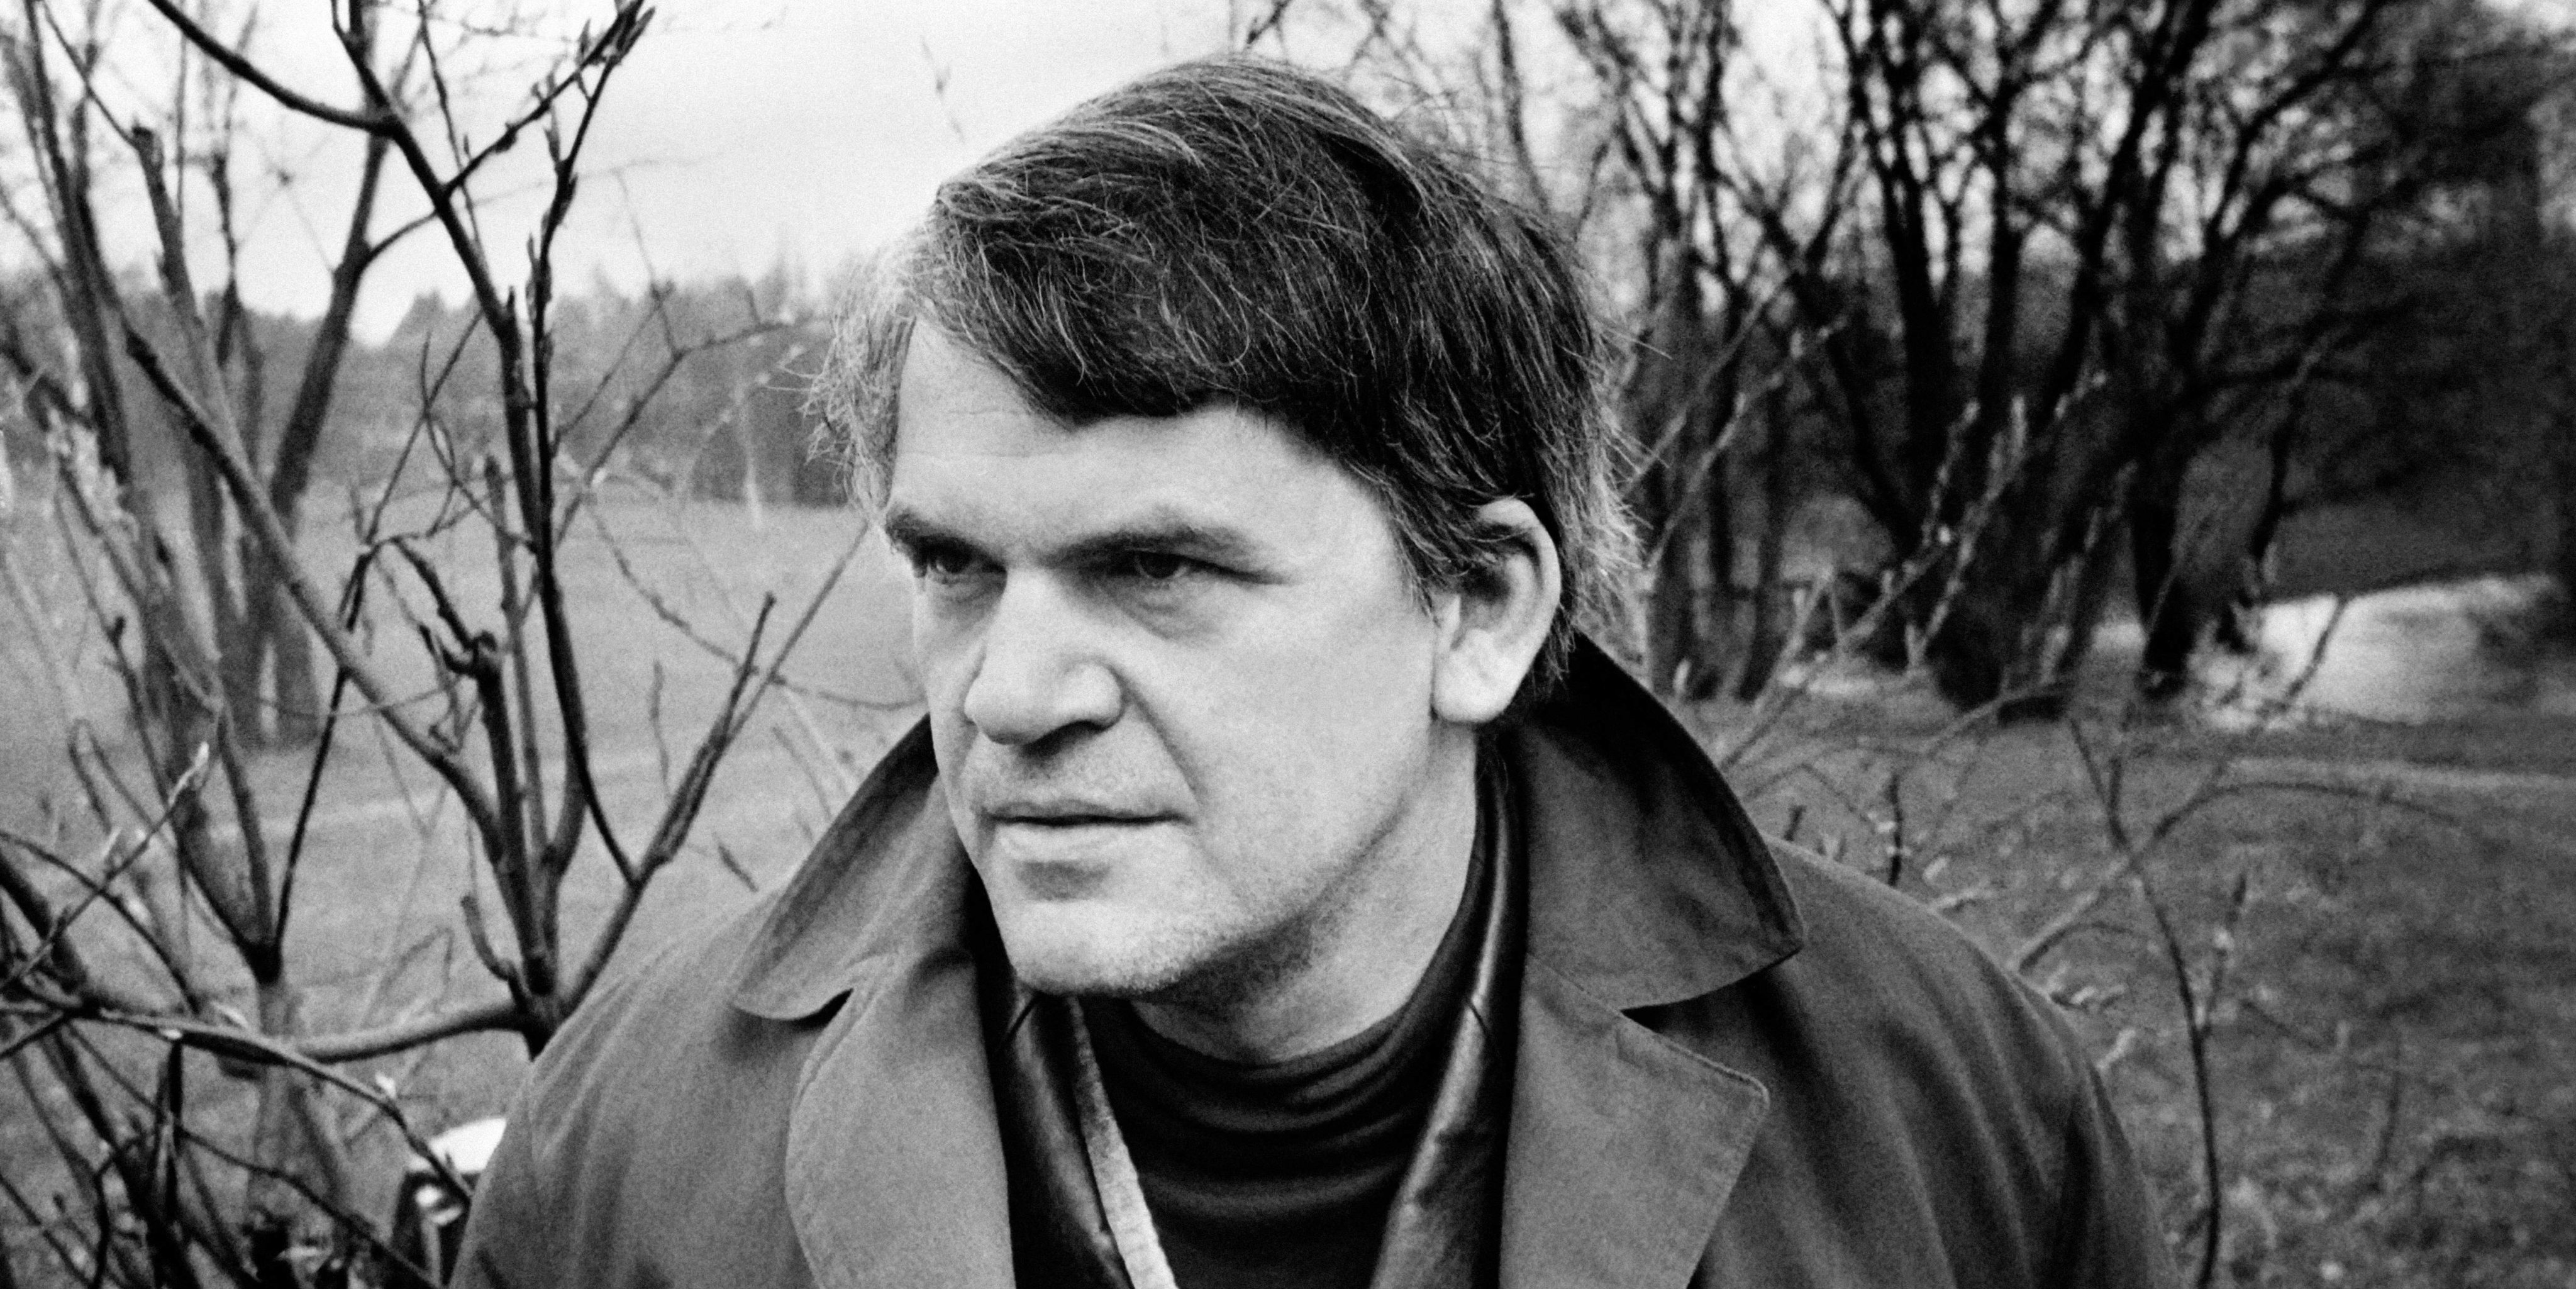 Milan Kundera (1929-2023) o narrador da inquietação